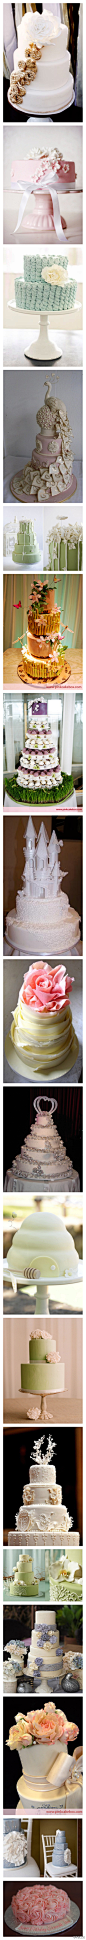 分享一组超美的婚礼蛋糕